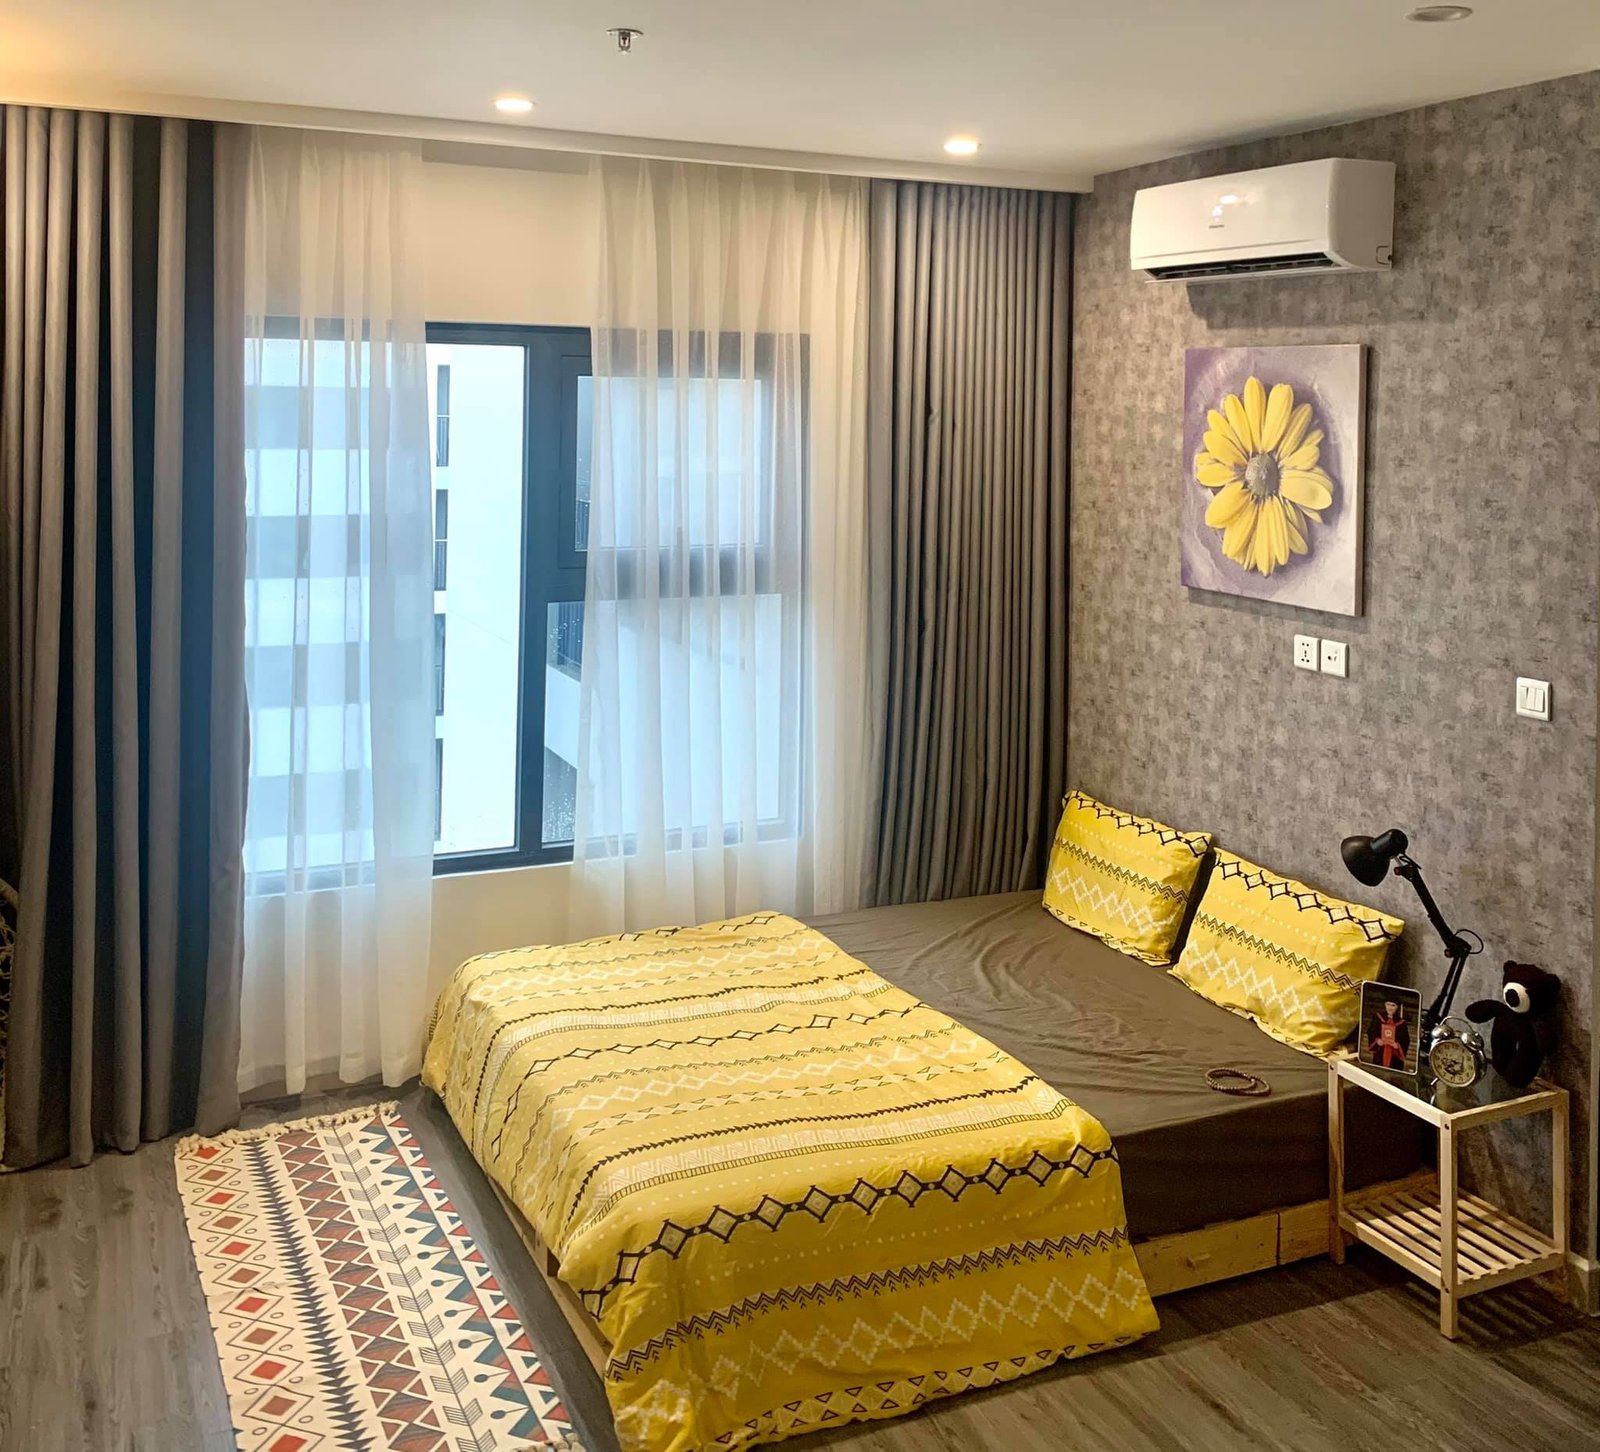 Không gian phòng ngủ cưc ấm cùng và thống nhất và hài hòa với gam màu nâu và vàng